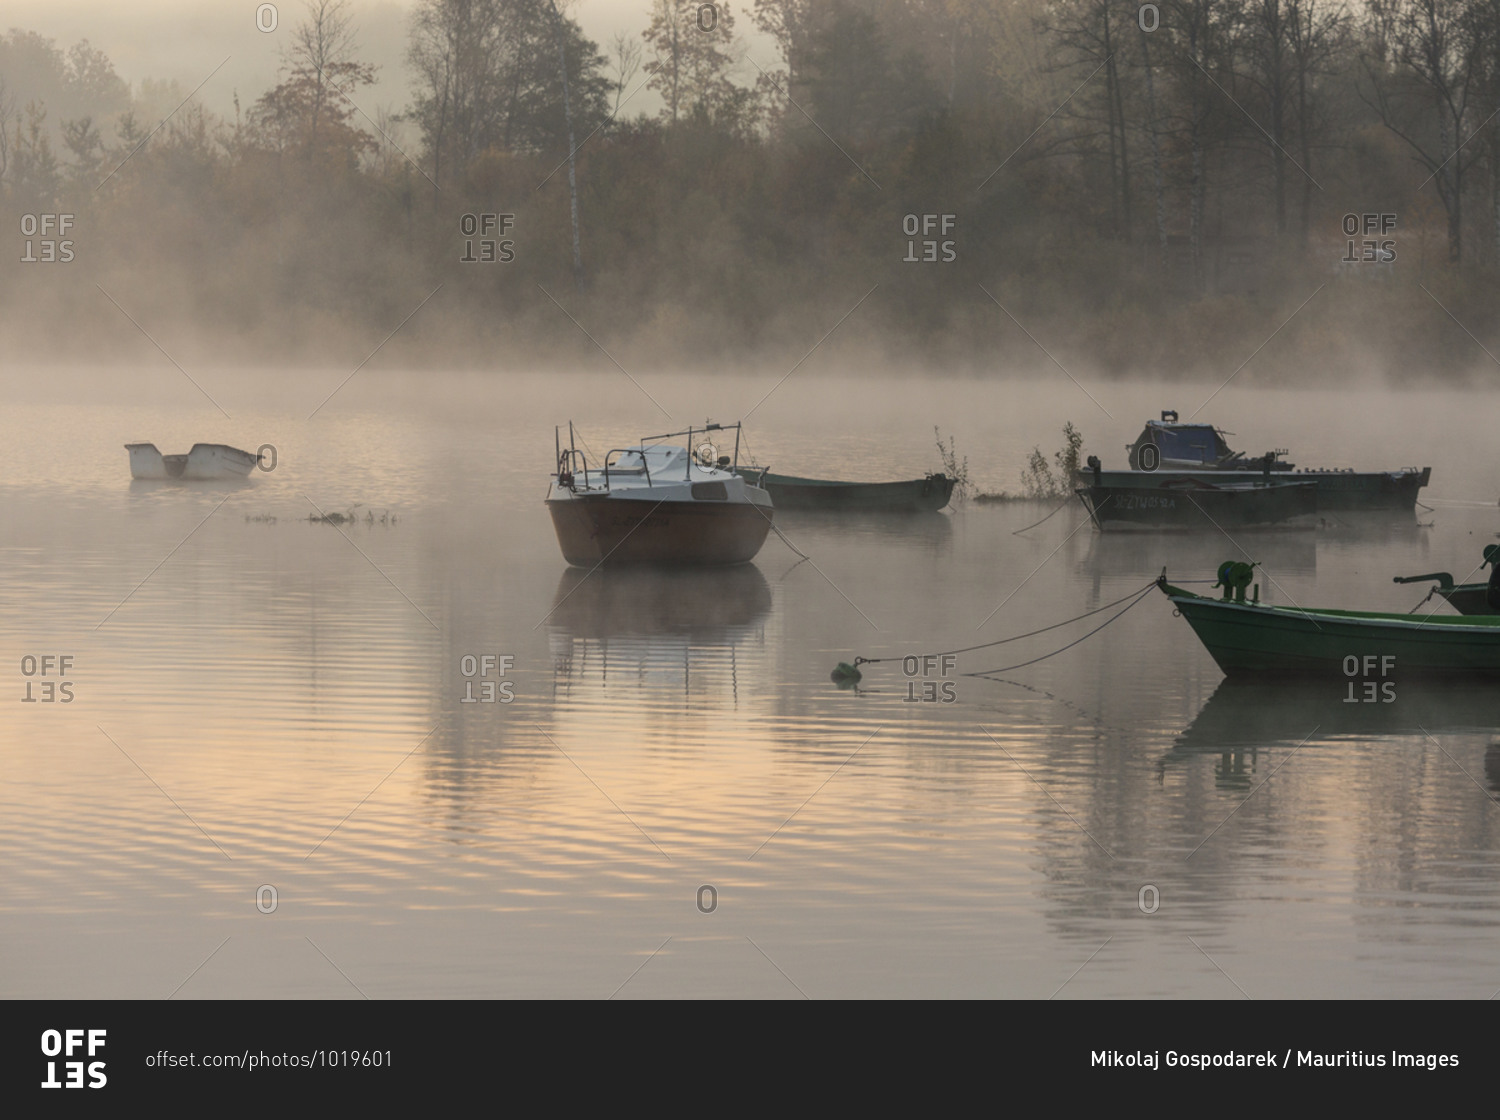 Europe, Poland, Silesian Voivodeship, Jezioro Zywieckie / Zywiec Lake, boats, fog